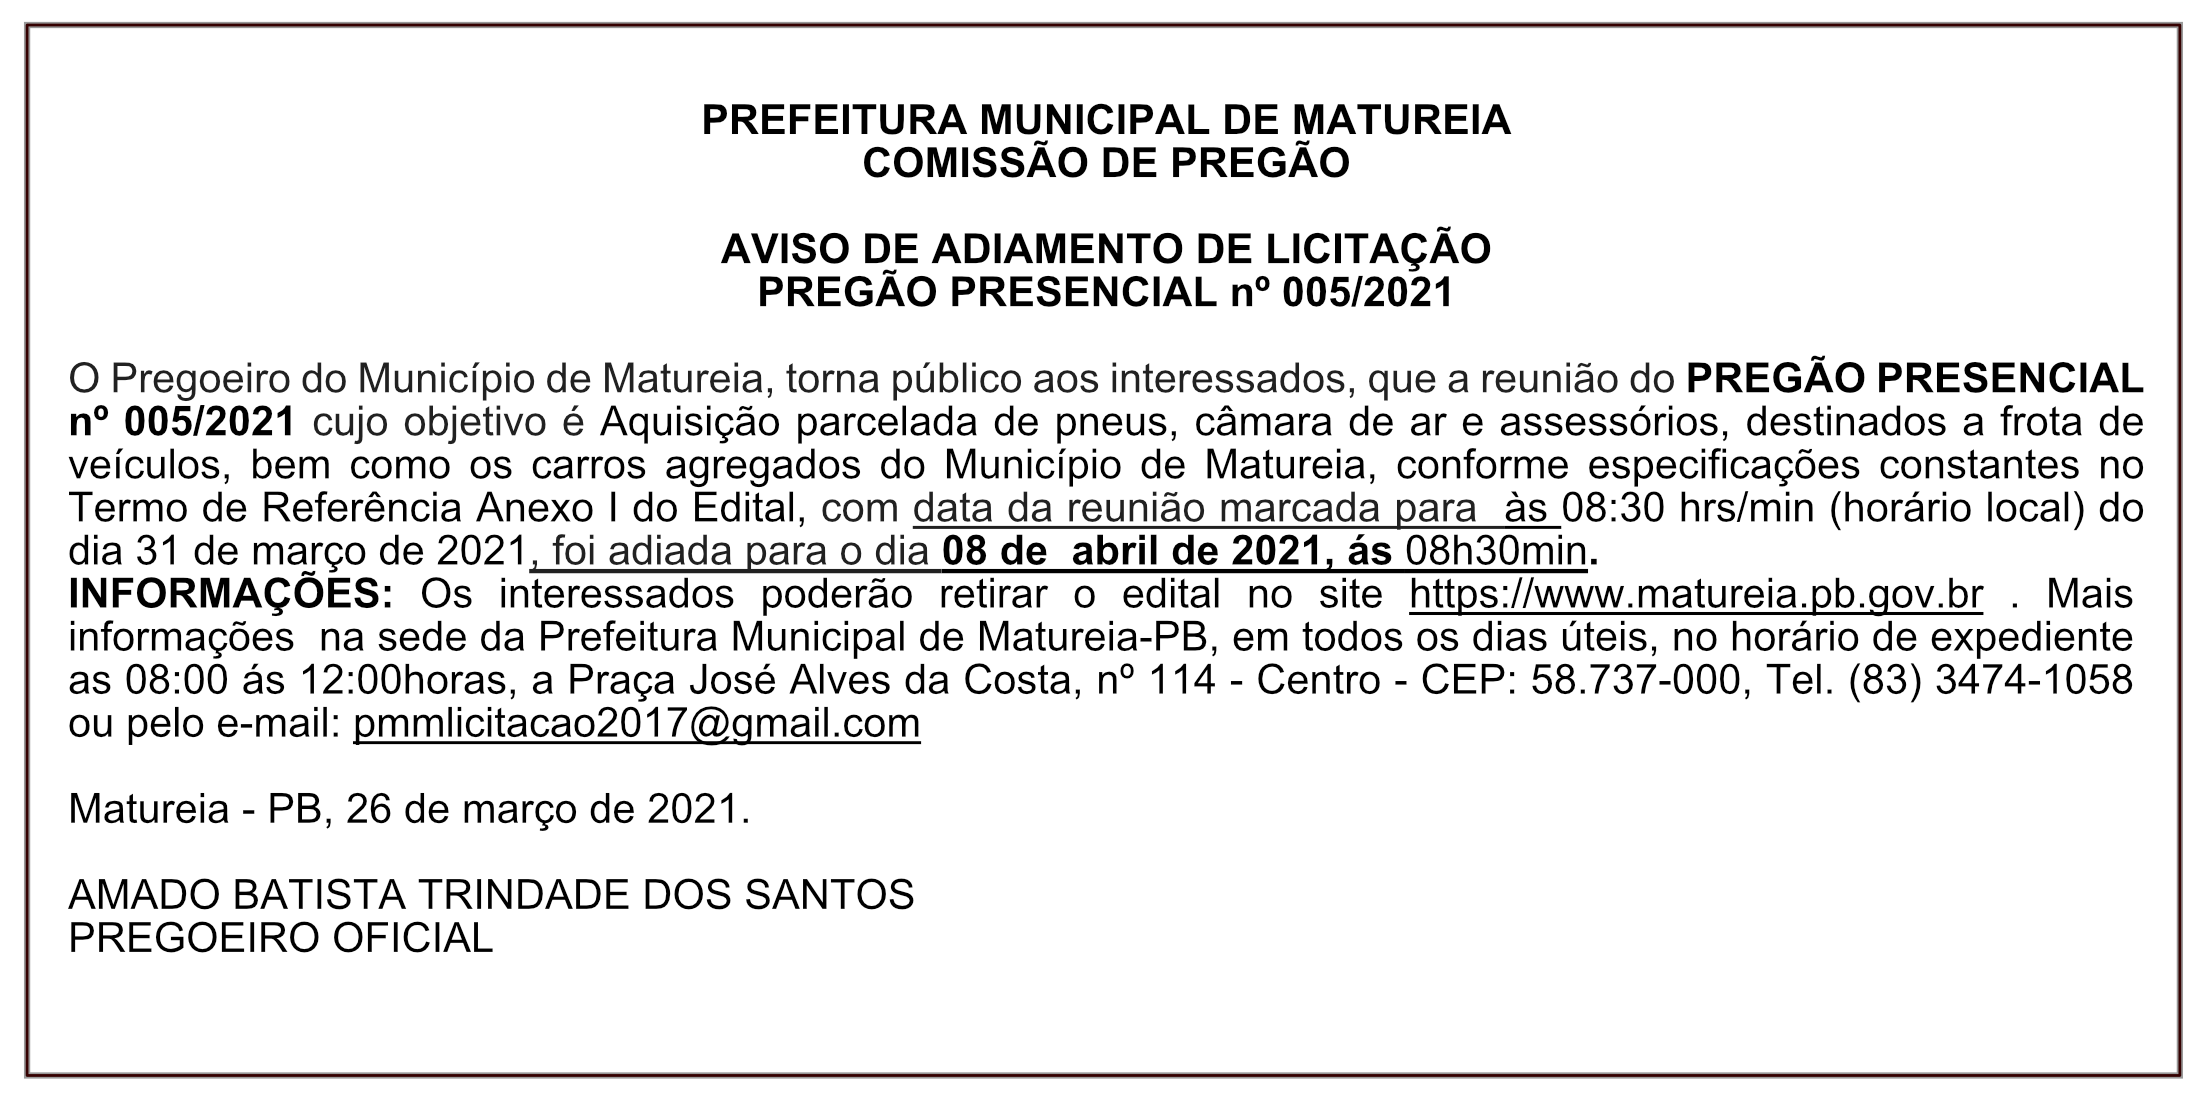 PREFEITURA MUNICIPAL DE MATUREIA – COMISSÃO DE PREGÃO – AVISO DE ADIAMENTO DE LICITAÇÃO – PREGÃO PRESENCIAL Nº 005/2021